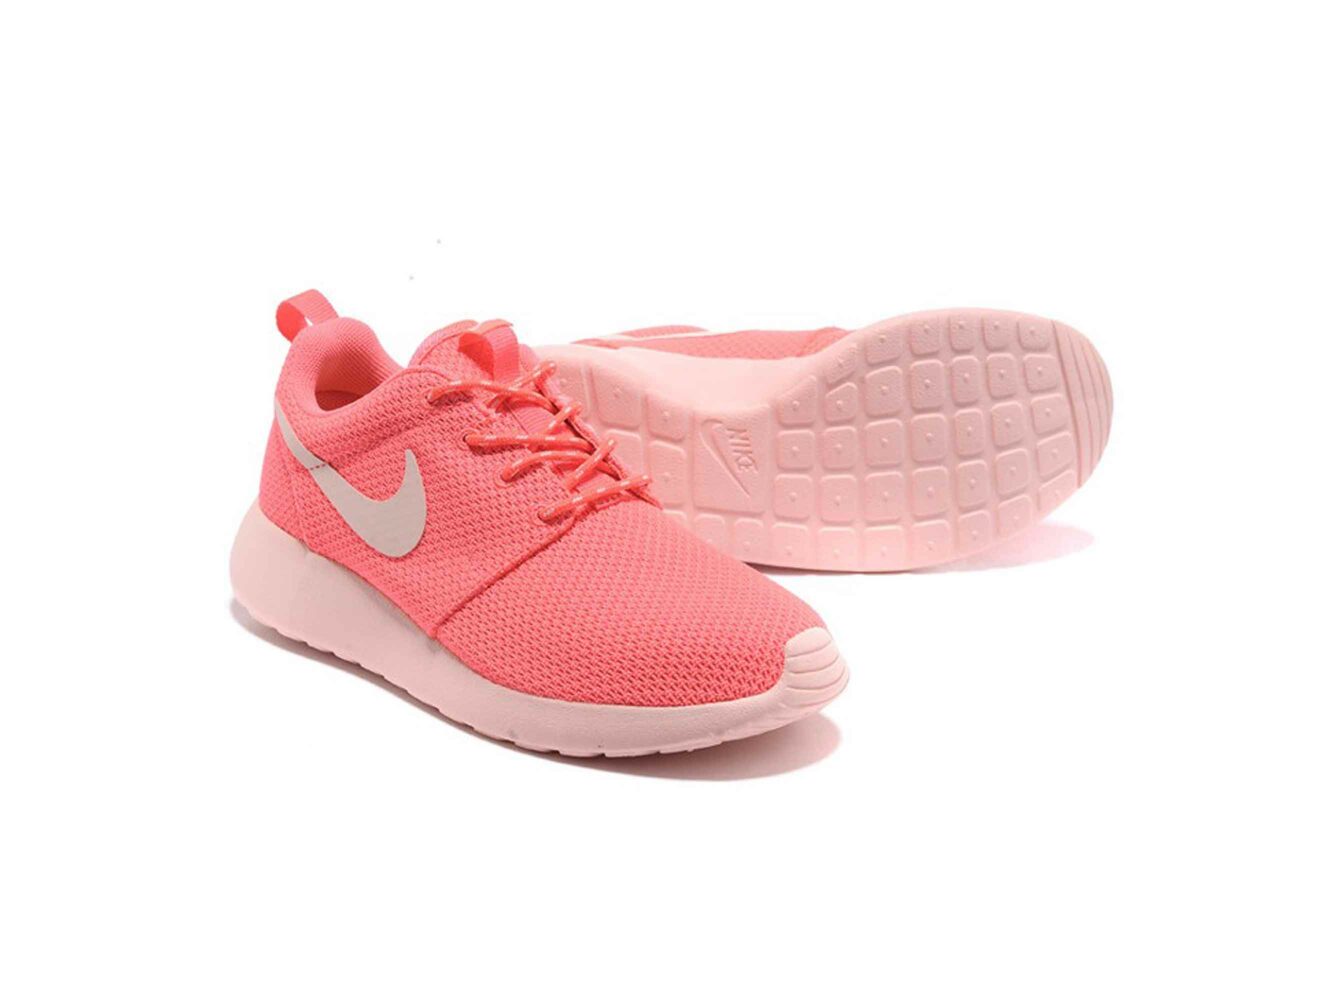 Nike Roshe Run Pink Light